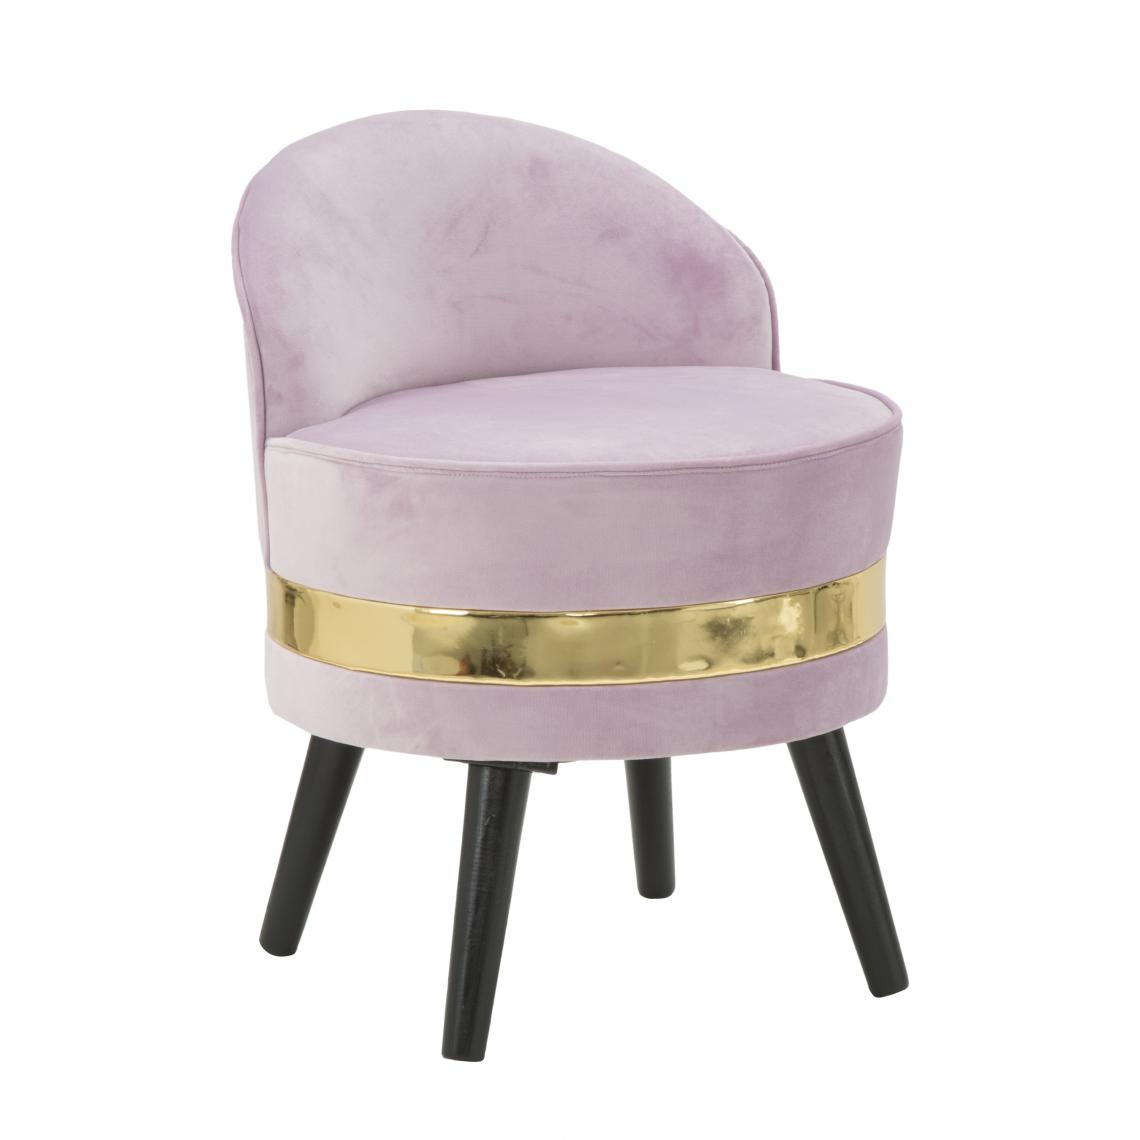 Alter - Mini chaise en bois, revêtement en éponge et velours synthétique, couleur rose avec bande dorée, Mesures 45 x 62 x 45 cm - Chaises